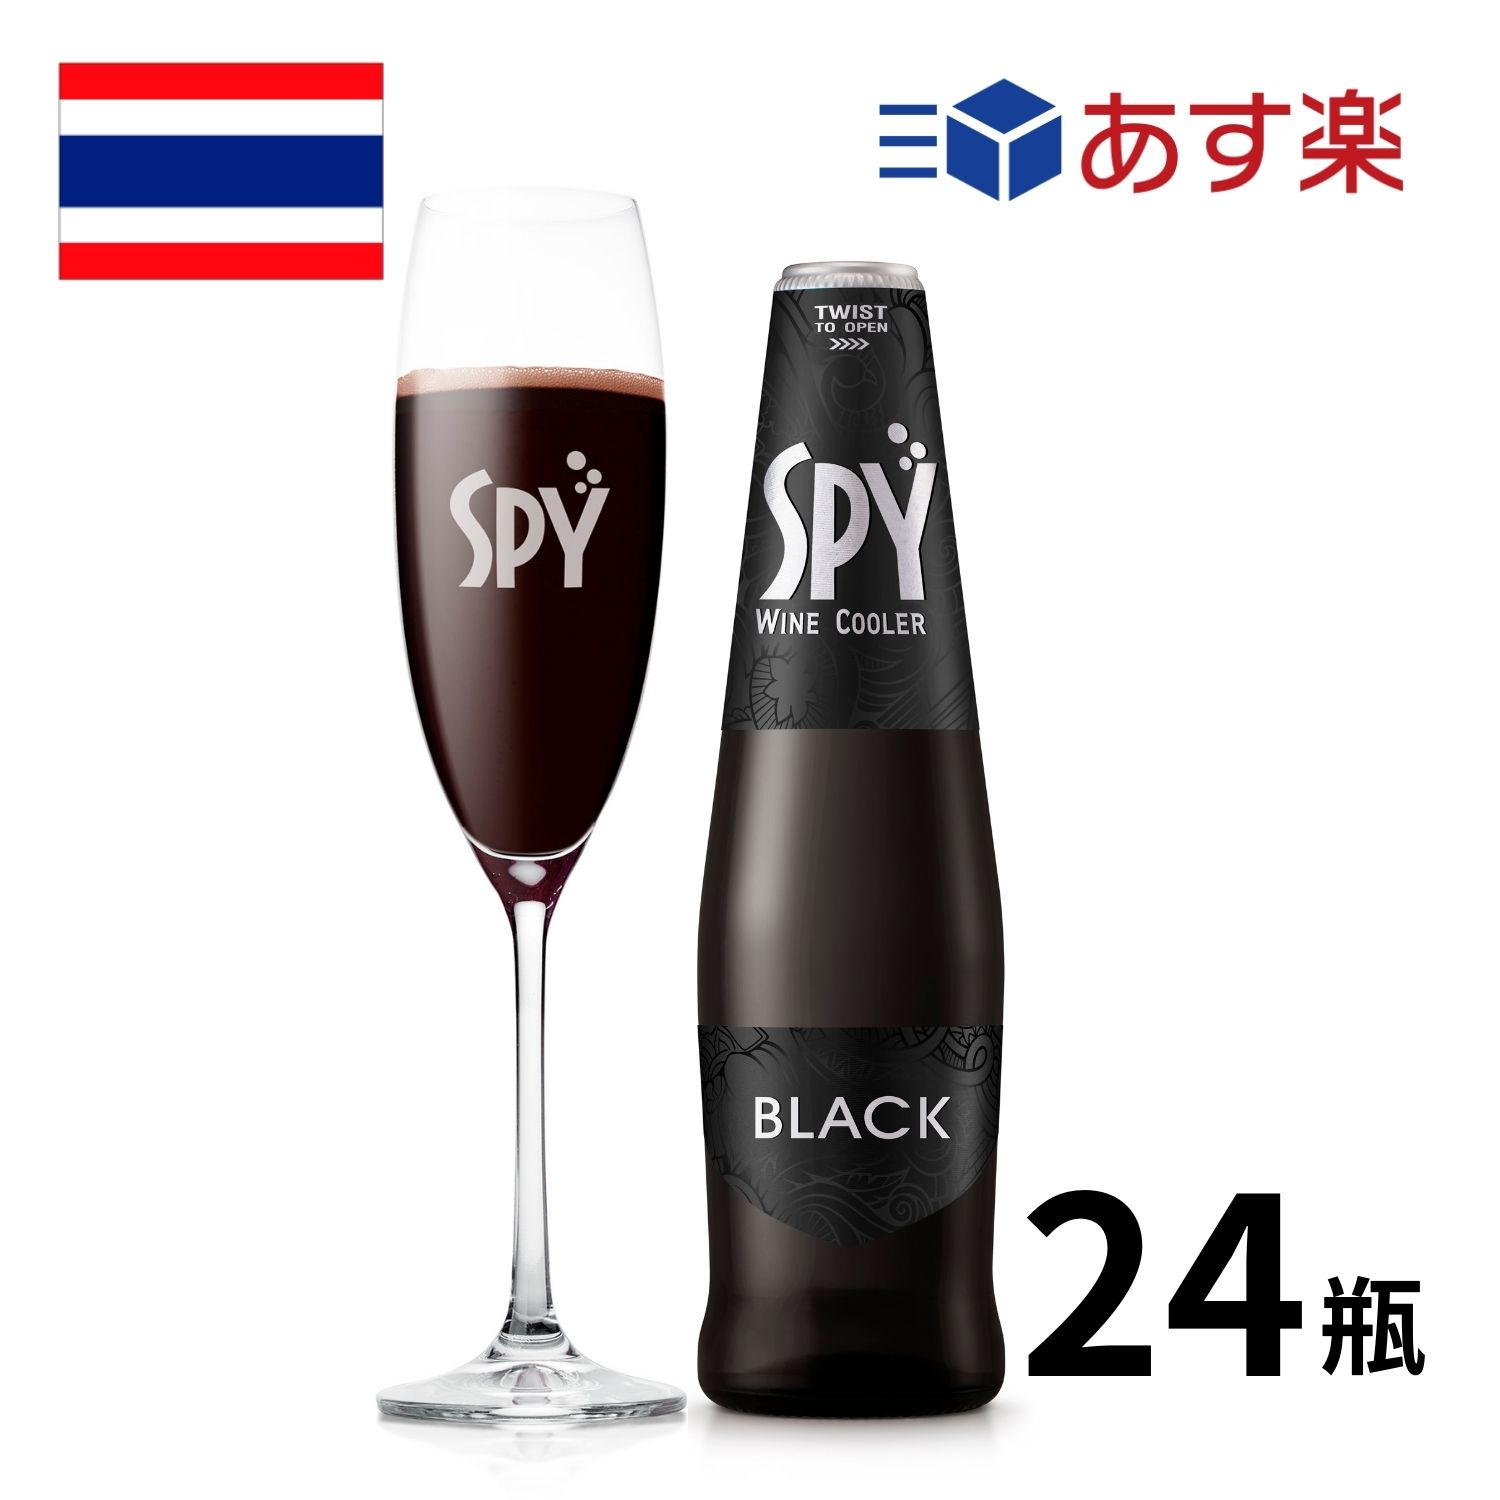 商品紹介 SPY(スパイ)シリーズは、タイ産のワインをベースに天然のソーダ水で割ったフレッシュでフルーティーな味わいが楽しめるワインクーラーです。 ●SPYブラック(ALC.7%・275ml×24本） ・フルボディの赤ワインを思わせる凝縮した果実味。 ・内容量：275ml x 24本 ・原材料：ワイン、ソーダ水、香料 ・保存方法：日なたを避けて、ていねいに。 ・商品、ケース等のデザインの変更が予告無く行われる場合があります。 ※こちらの商品は「あす楽対象」です。 楽天倉庫からの自動発送のため、注文後のキャンセル、変更はお受けできません。 ・12:00（午前12時）までに決済完了で最短翌日お届けいたします。 ・あす楽対象エリアをご確認の上、ご注文ください。 ・お届け日指定で「あす楽」が選択されていることをご確認ください。 ・外箱には入れず、商品の箱のままでのお届けとなります。 ・ラッピング、のし、メッセージカードは承ることができません。 ・備考欄、お問い合わせ等での日時指定、ご注文内容の変更はできません。 ・商品を複数ご注文いただいた場合、別々のお届けとなる場合がございます。 ・あす楽商品以外とのご注文をいただいた際には、同時にお届けできません。 ・配送伝票の注文者欄は「楽天世界のお酒専門店Ikemitsu」と表示されます。 ・注文者情報に記載された氏名が伝票に記載されます。「備考欄」等でご指定いただいても変更できませんのでご了承くださいませ。 「お酒は20歳から！未成年者への酒類の販売は固くお断りしています！」【タイ】スパイブラック（SPY BLACK）瓶 275ml×24本入 タイ産ワインをのソーダで割った新感覚RTDカクテル SPY(スパイ)シリーズはタイ産のワインをベースにした、フレッシュでフルーティーな味わいが楽しめるワインクーラー。タイではコンビニやスーパーなどでもよく見かけるブランドです。 フルーティーなフレーバーとボトルのままでも飲めるキュートなデザインが人気。カラフルなバリエーションは全部で8種類です。 スパイブラックは他のSPYシリーズの甘口でポップなイメージとは一線を画し、ナイトシーンにもしっくりくるクールなドリンク。 濃厚な赤ワインをベースにブドウのフルーティーさに苦みと渋みが加わり、落ち着きのある味わいに。 商品名 SPY BLACK（スパイ・ブラック) アルコール度数 6.0％ タイプ 甘味果実酒（ワインクーラー）※ワインをソーダで割ったお酒です。 スタイル スパークリング 原産国 タイ 容量 275ml バリエーション 24本入 味の特徴 濃厚な赤ワインをベースにブドウのフルーティーさに、苦みと渋みが加わった落ち着きのある味わい。 ※こちらの商品は「あす楽対象」です。 楽天倉庫からの自動発送のため、注文後のキャンセル、変更はお受けできません。 ・12:00（午前12時）までに決済完了で最短翌日お届けいたします。 ・あす楽対象エリアをご確認の上、ご注文ください。 ・お届け日指定で「あす楽」が選択されていることをご確認ください。 ・外箱には入れず、商品の箱のままでのお届けとなります。 ・ラッピング、のし、メッセージカードは承ることができません。 ・備考欄、お問い合わせ等での日時指定、ご注文内容の変更はできません。 ・商品を複数ご注文いただいた場合、別々のお届けとなる場合がございます。 ・あす楽商品以外とのご注文をいただいた際には、同時にお届けできません。 ・配送伝票の注文者欄は「楽天世界のお酒専門店Ikemitsu」と表示されます。 ・注文者情報に記載された氏名が伝票に記載されます。「備考欄」等でご指定いただいても変更できませんのでご了承くださいませ。 ・商品、ケース等のデザイン変更が予告無く行われる場合があります。 「お酒は20歳から！未成年者への酒類の販売は固くお断りしています！」